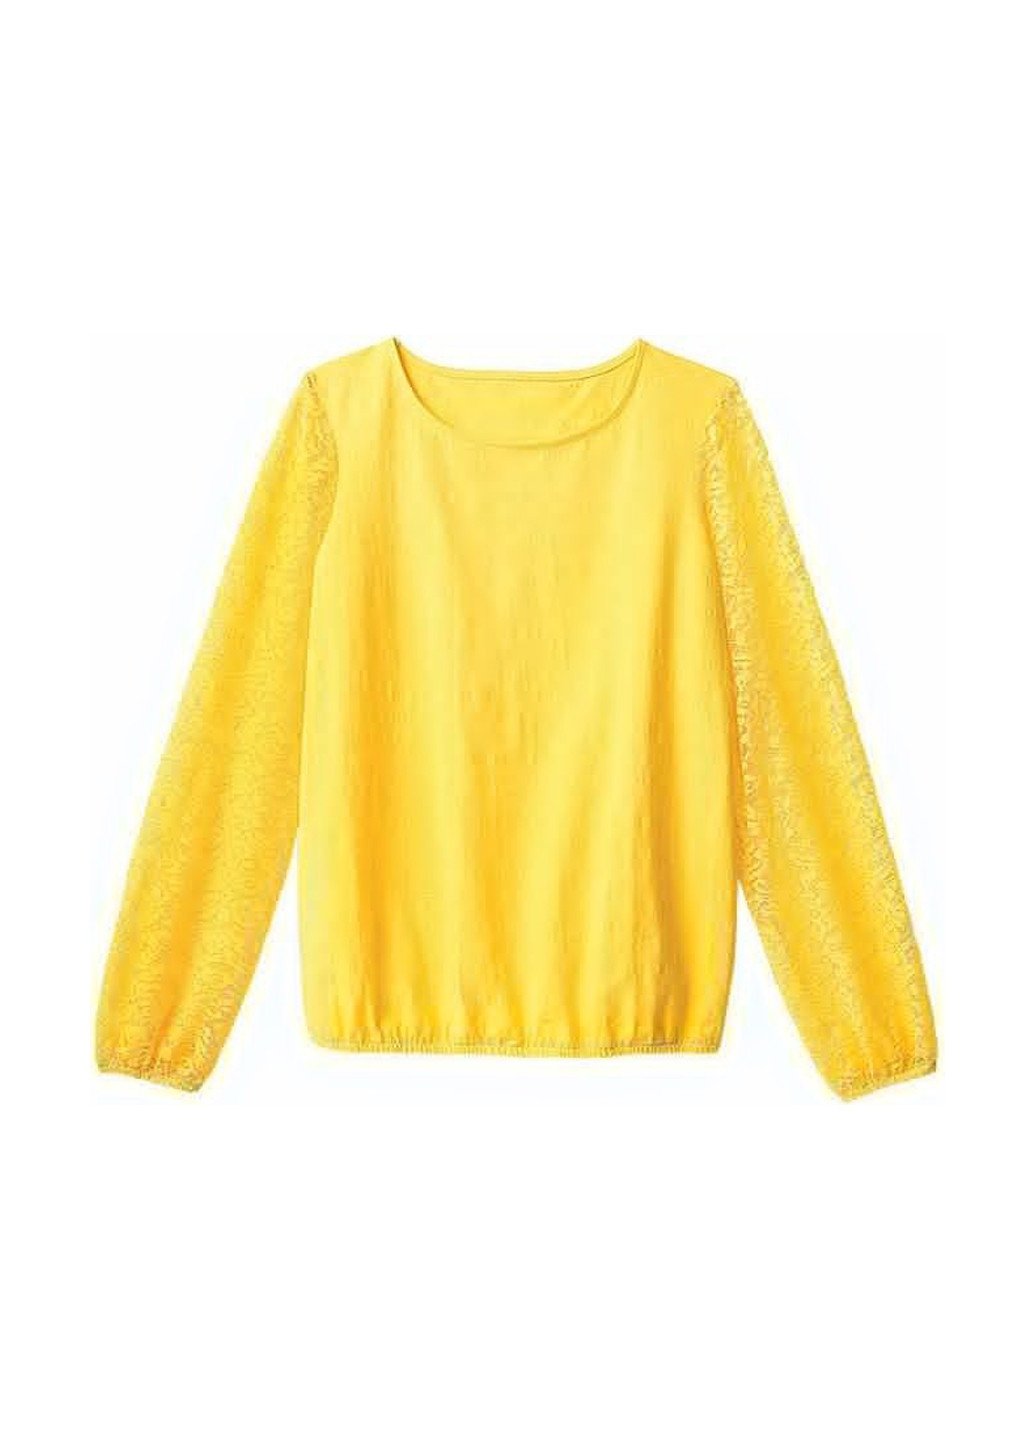 Желтая летняя блуза Avon